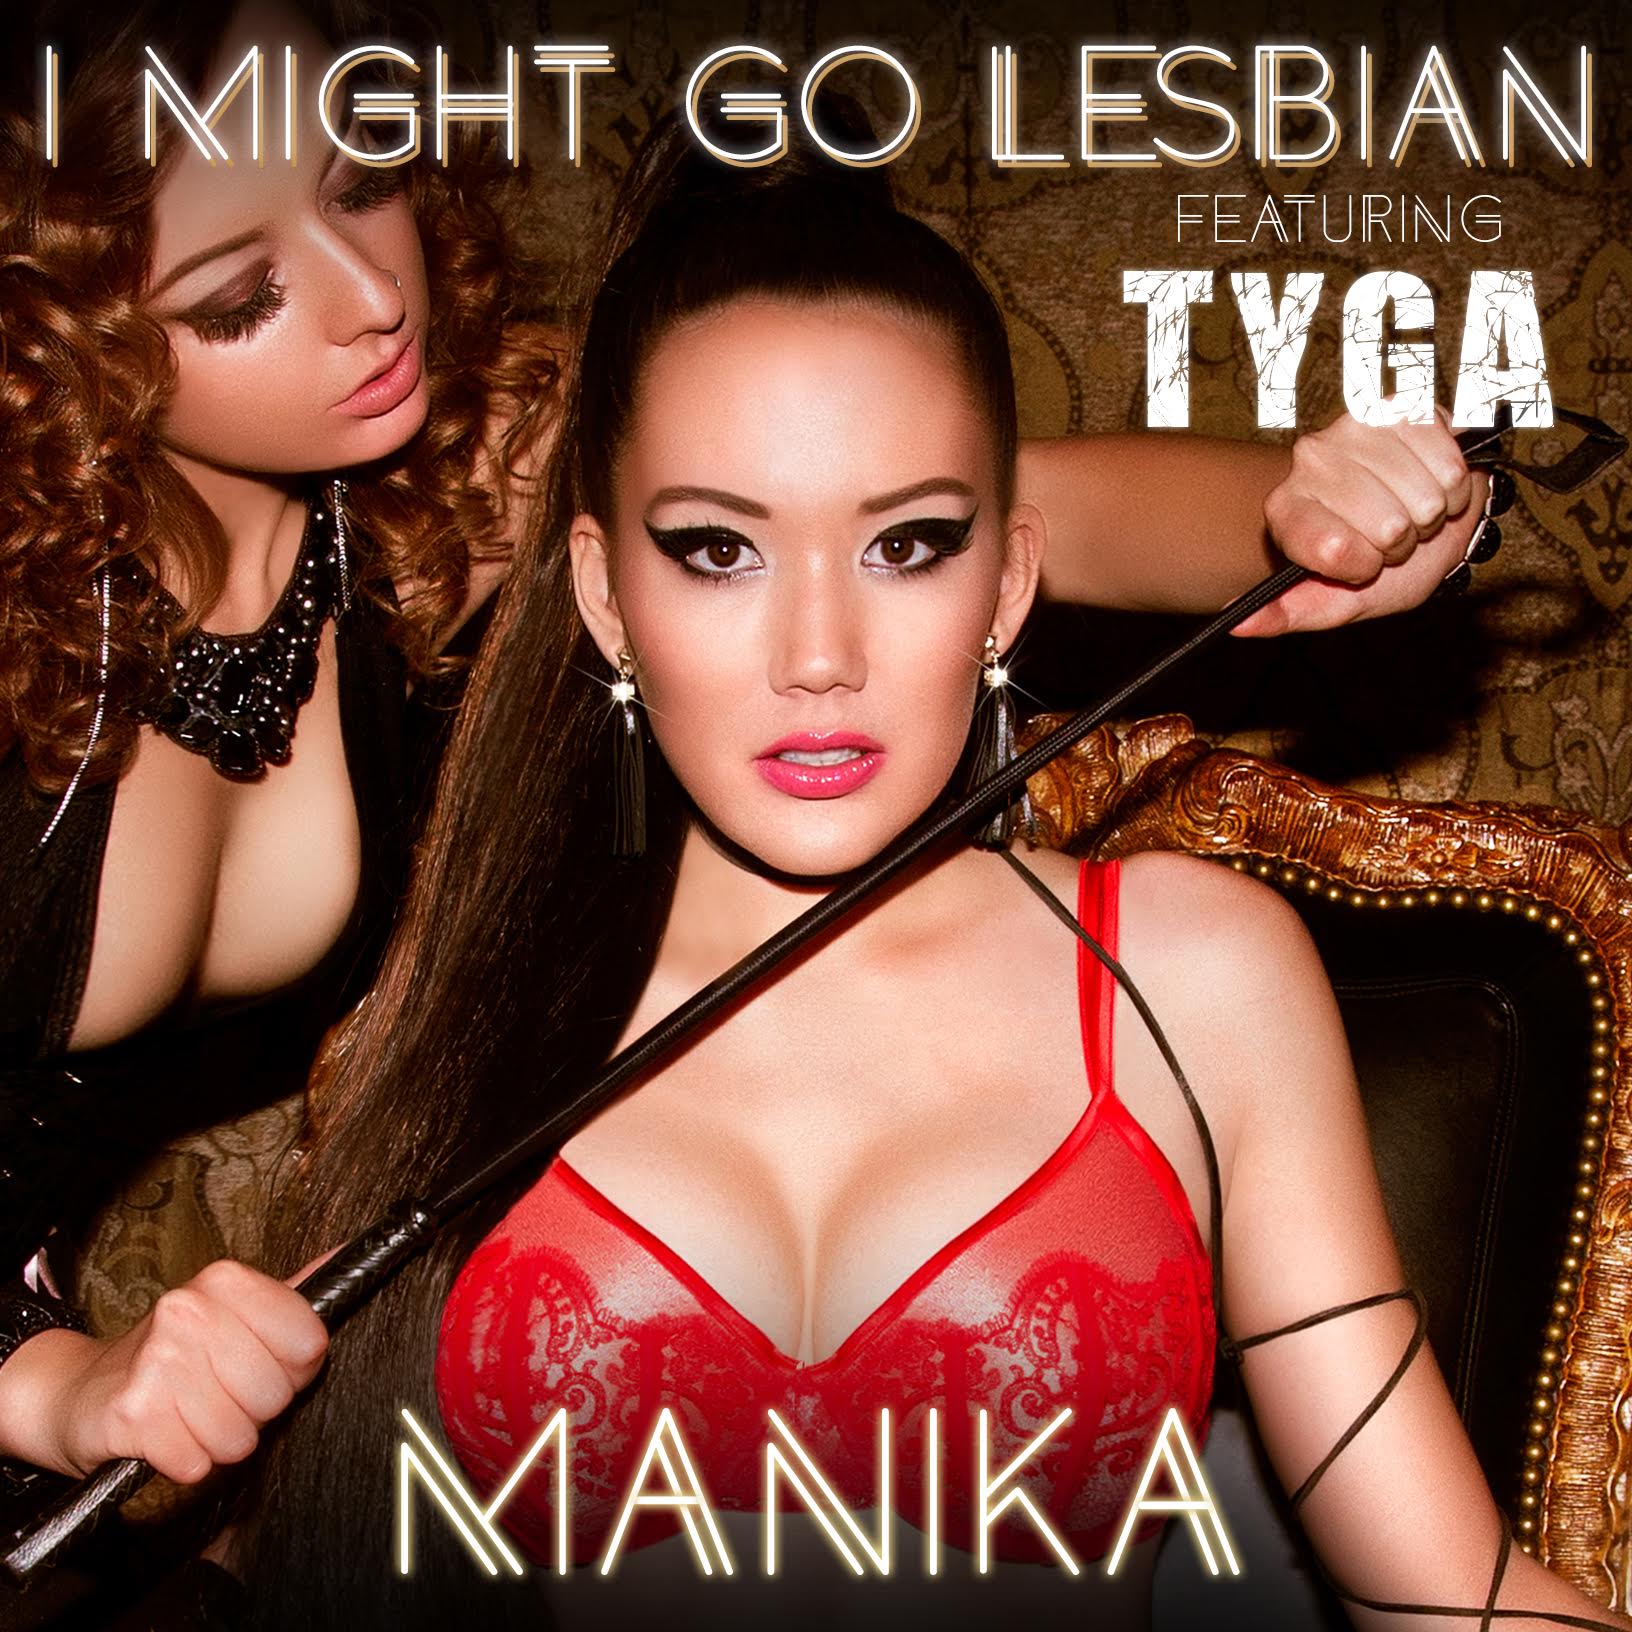 Album Cover - Manika Music - Single - I Might Go Lesbian featuring Tyga